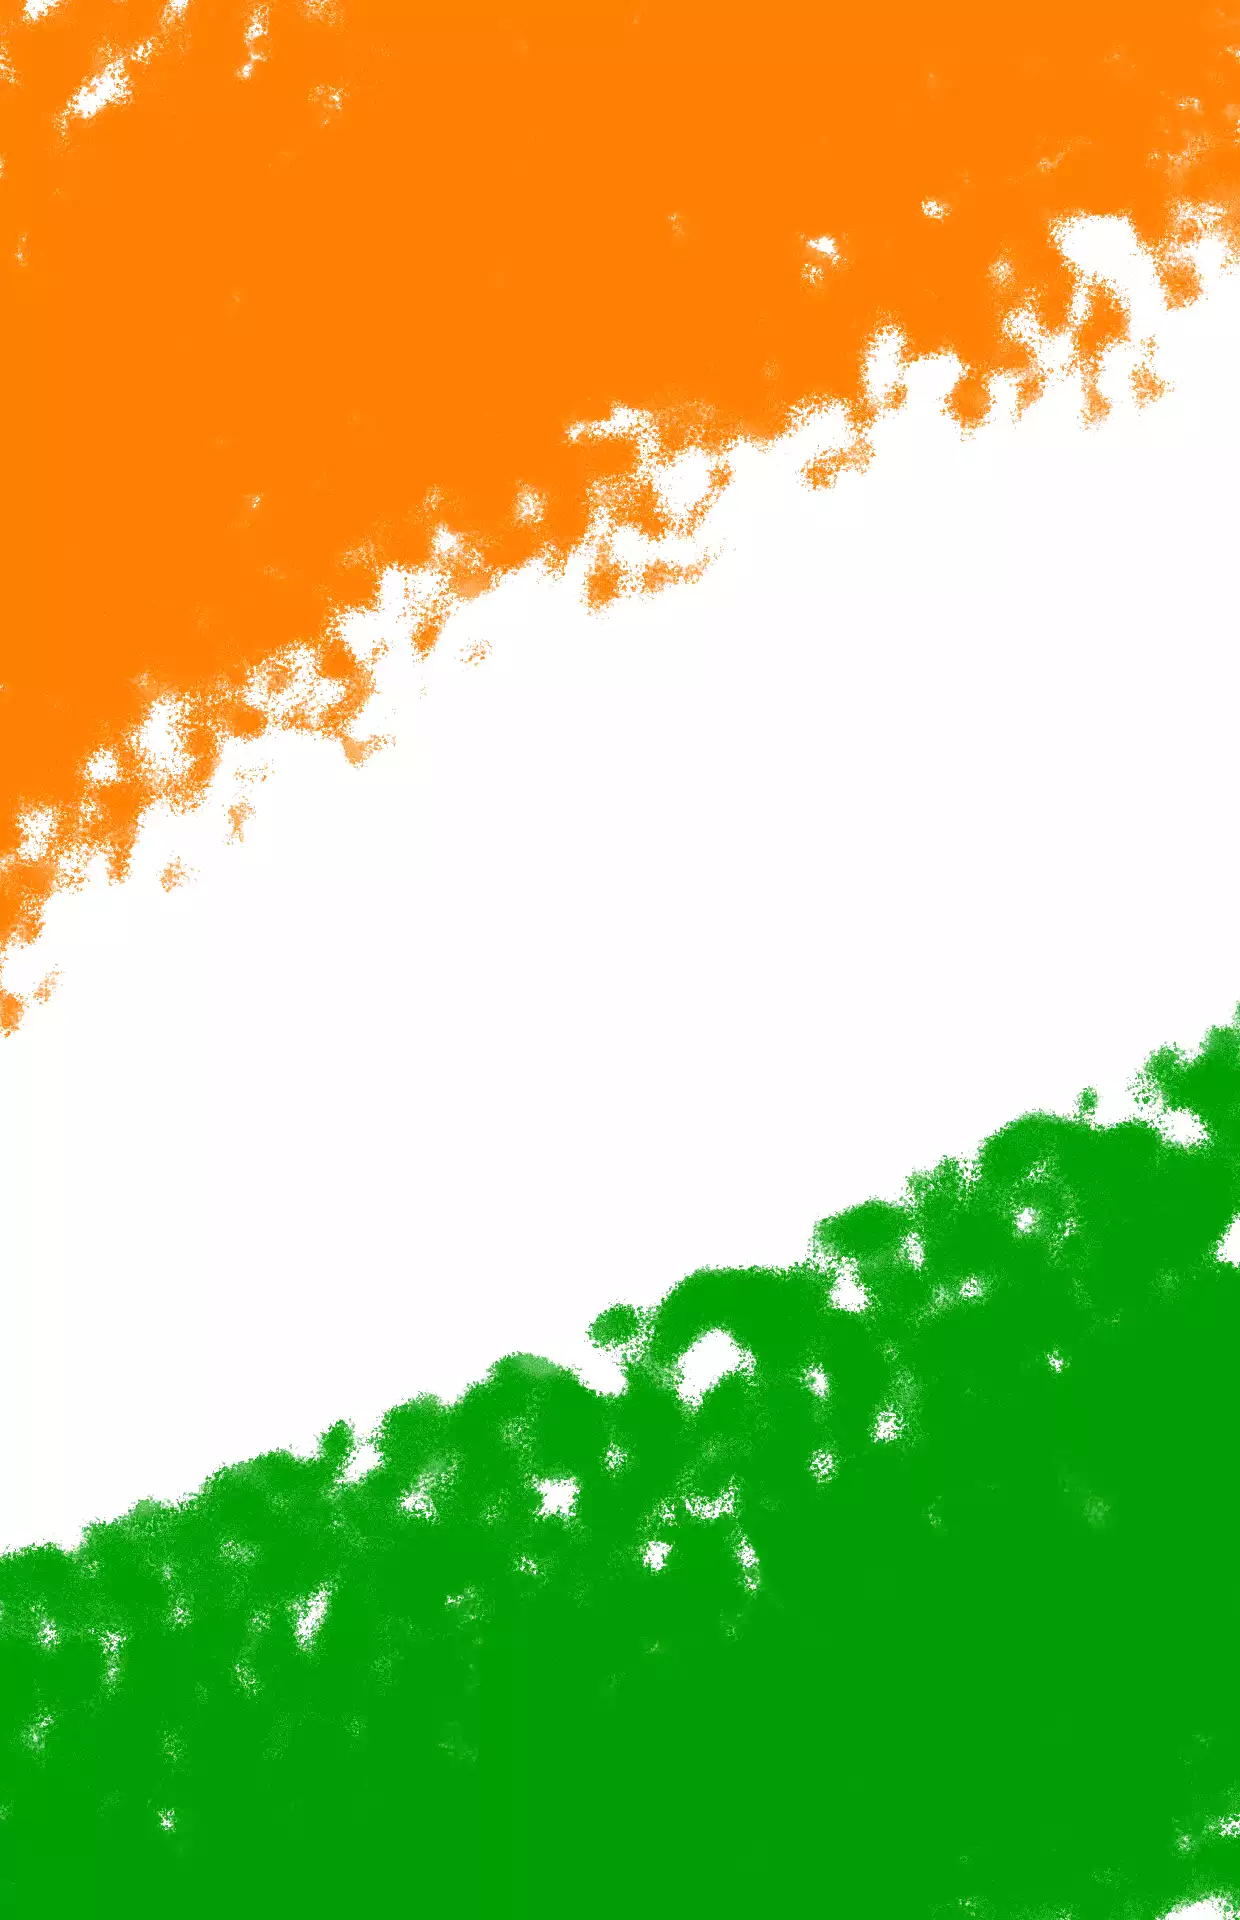 india background